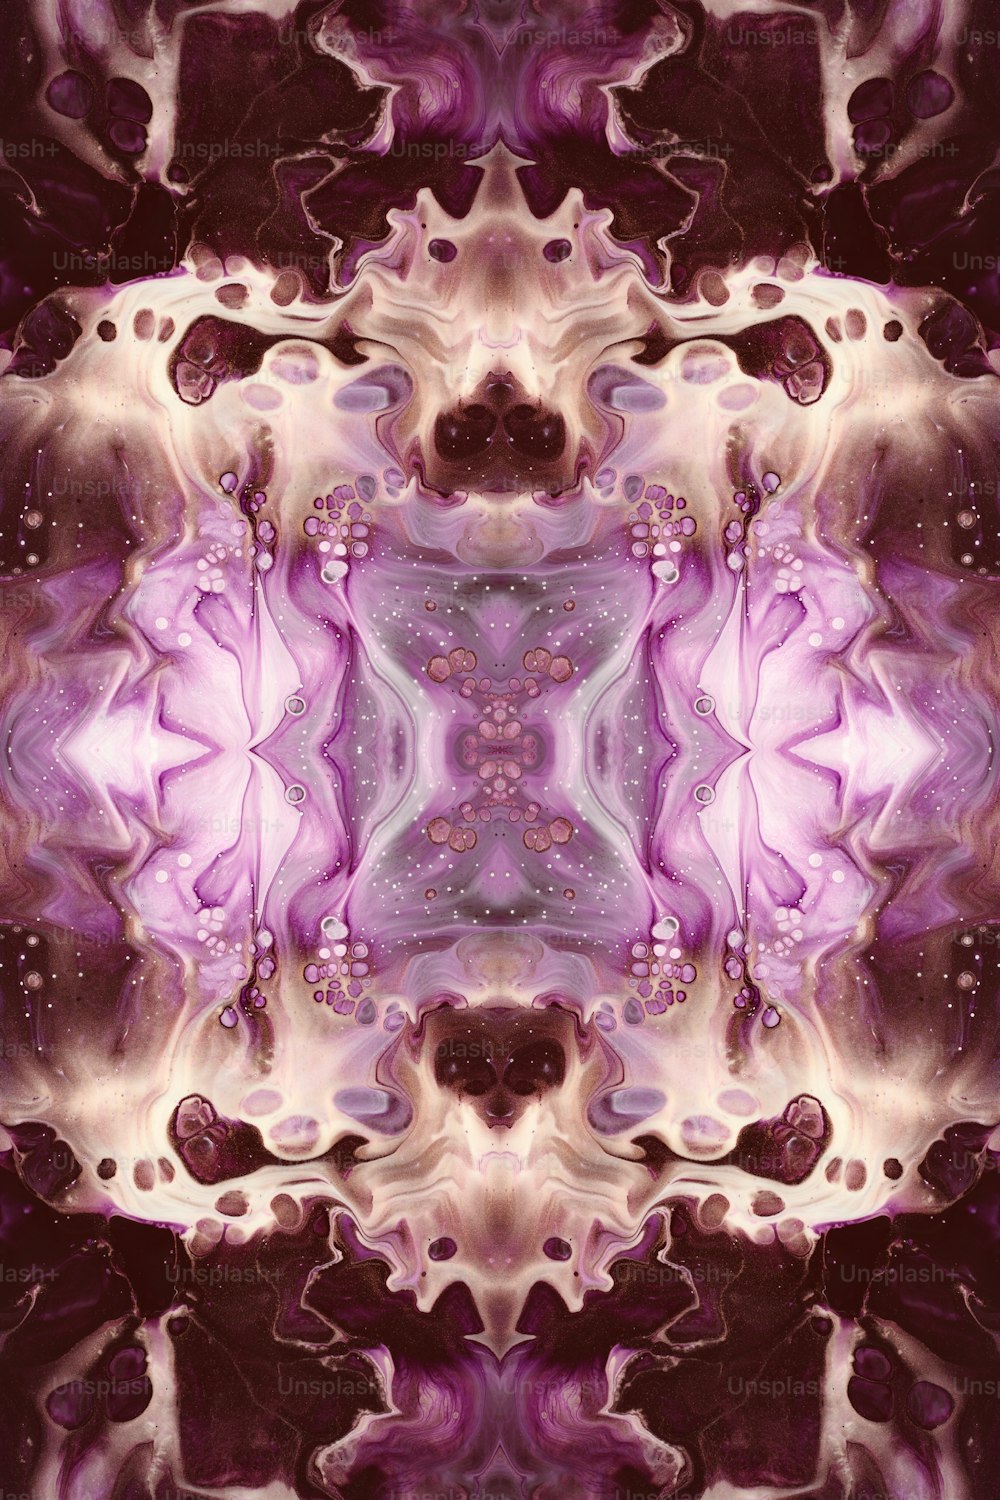 une image générée par ordinateur d’une fleur violette